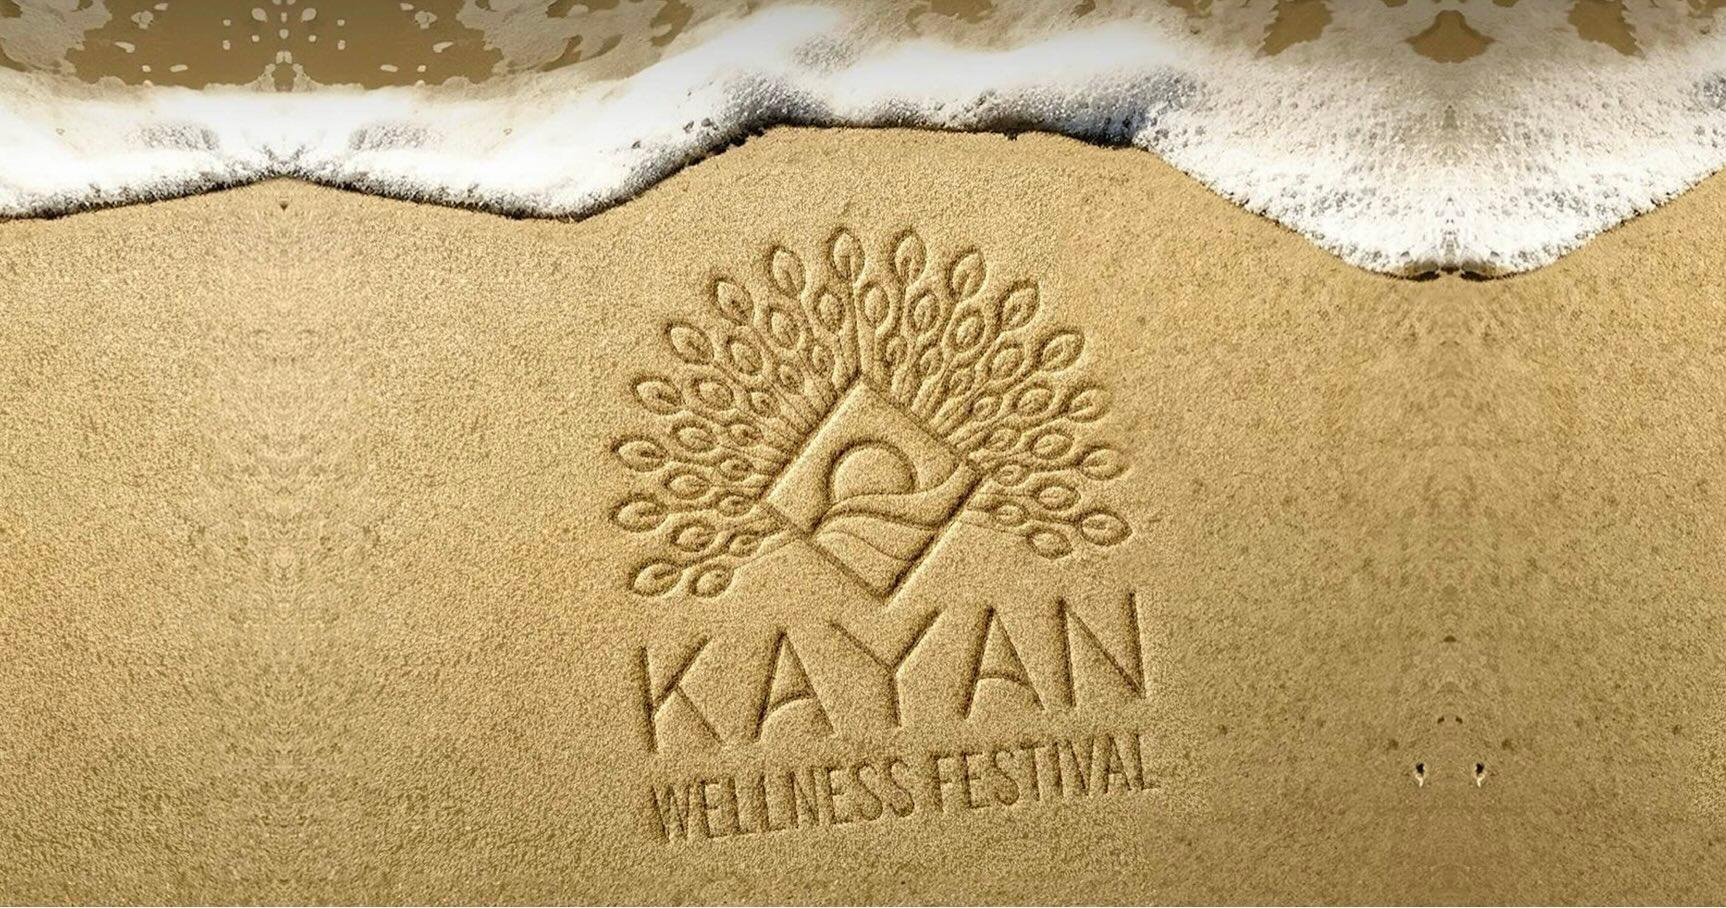 Kayan Wellness Festival is coming to Abu Dhabi -image